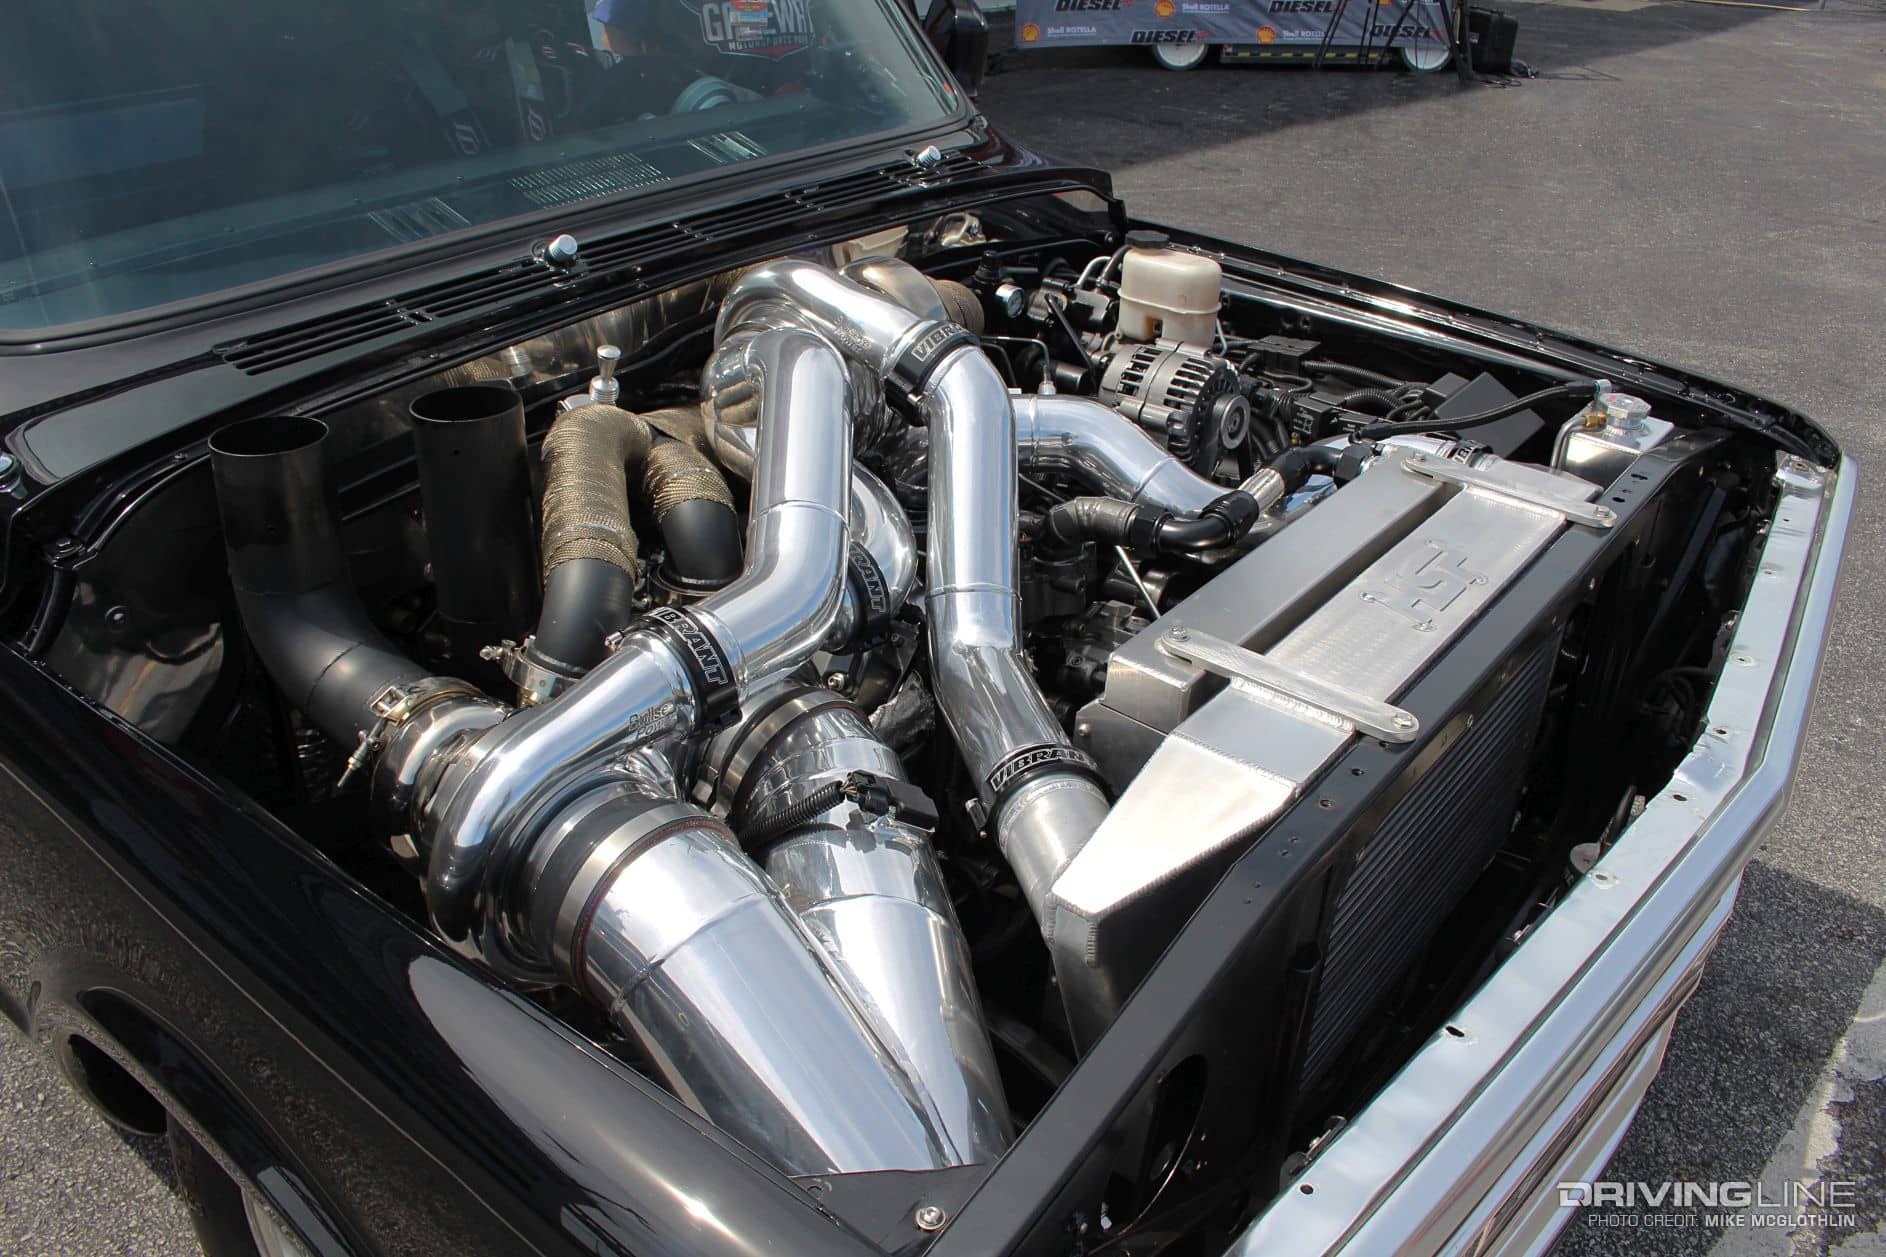 1969 Chevy C10 Med En trippel turbo Duramax i motorbåten